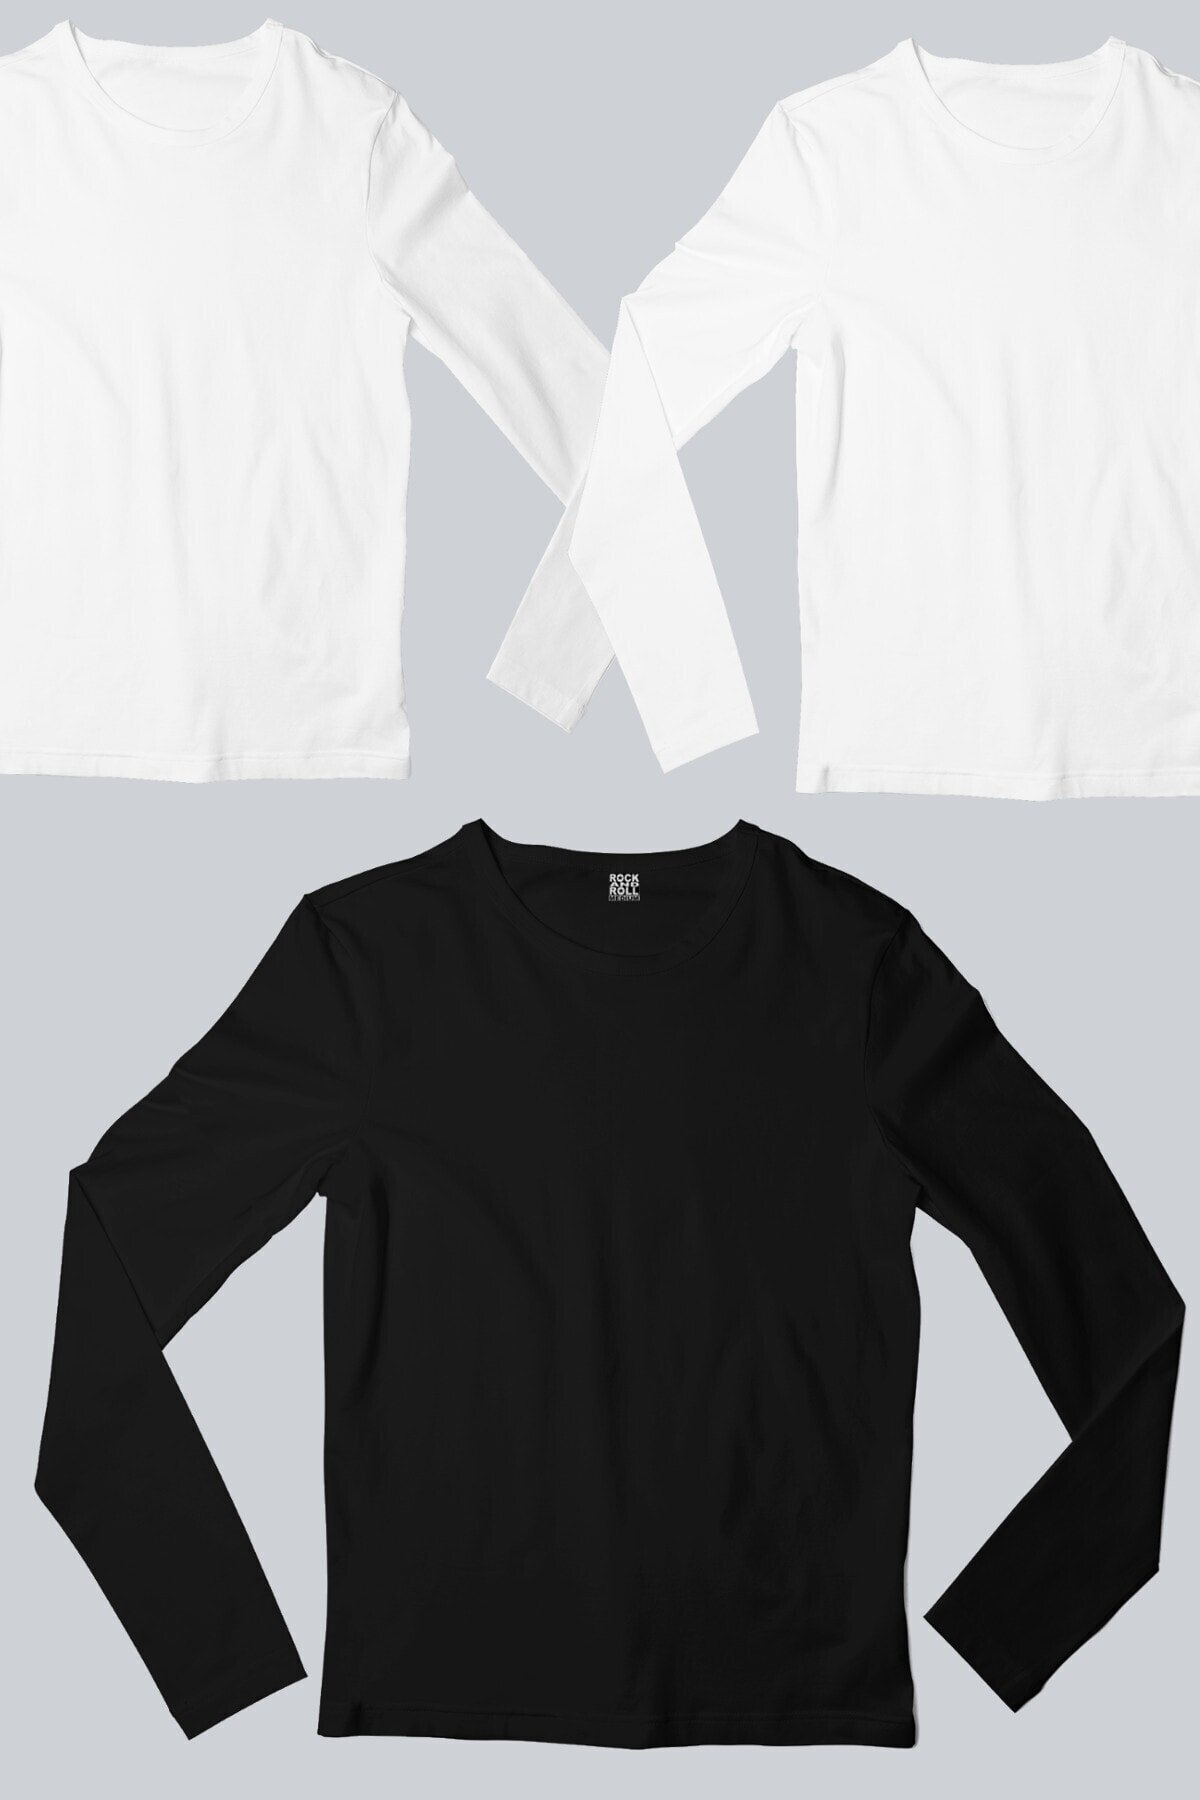 Düz, Baskısız 2 Beyaz, 1 Siyah Uzun Kollu T-shirt Erkek 3'lü Eko Paket